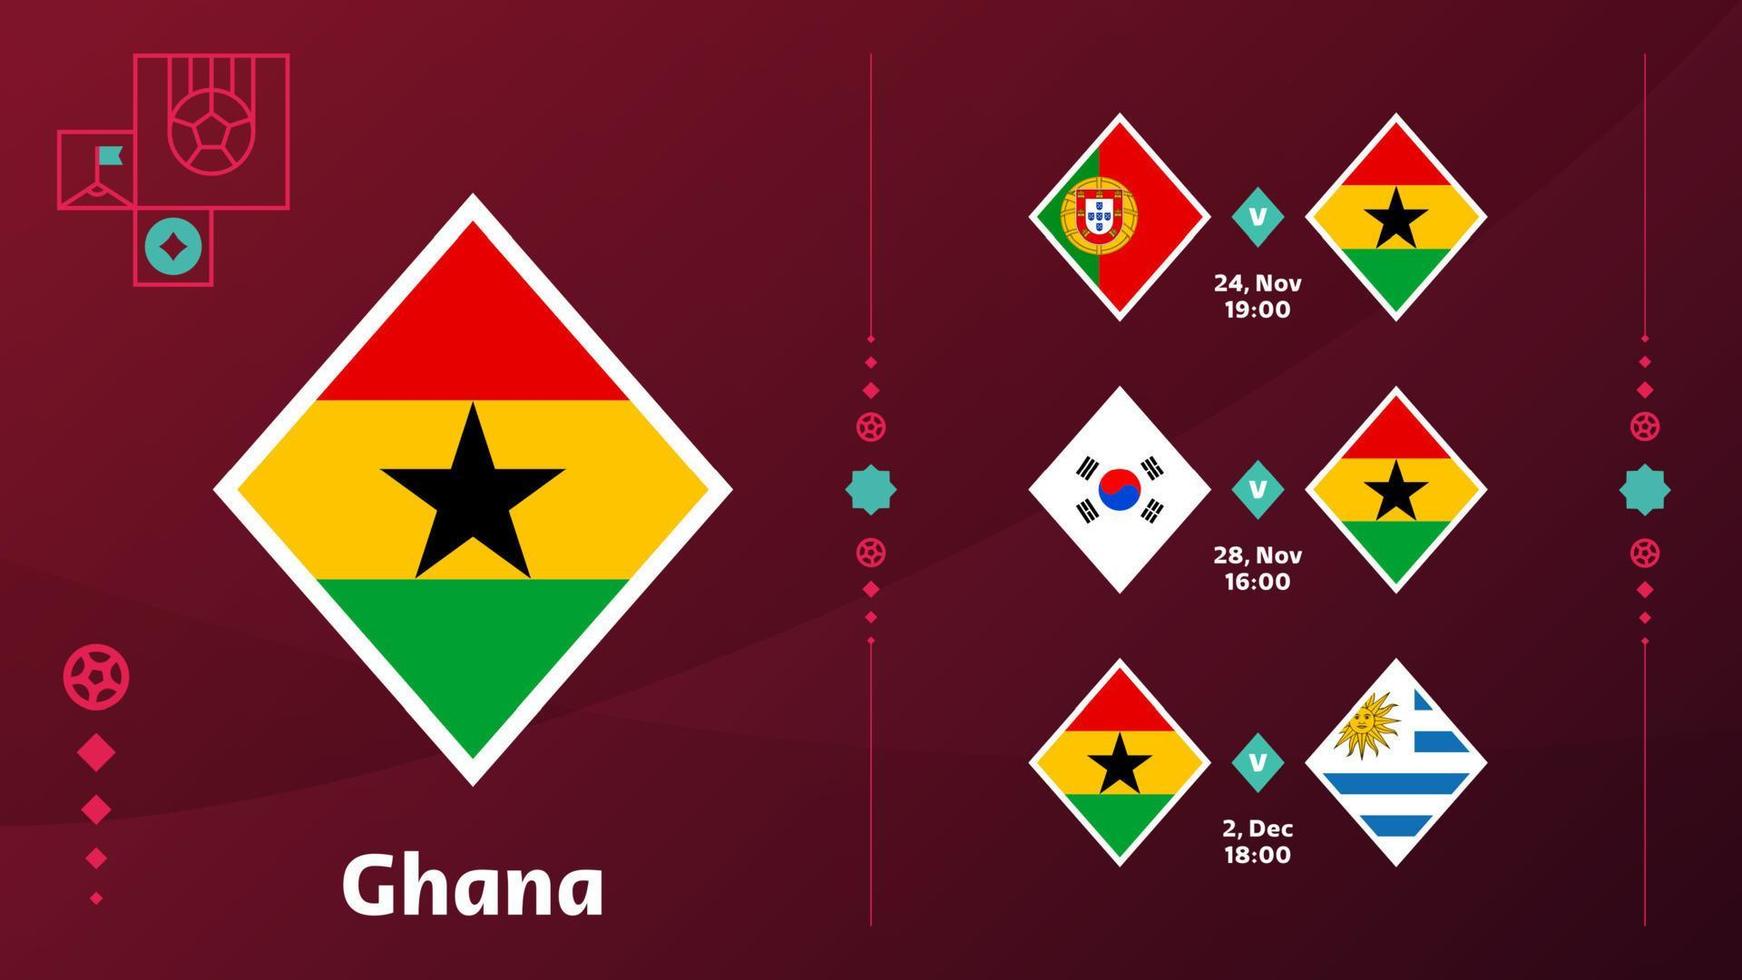 Ghana nationaal team schema wedstrijden in de laatste stadium Bij de 2022 Amerikaans voetbal wereld kampioenschap. vector illustratie van wereld Amerikaans voetbal 2022 wedstrijden.